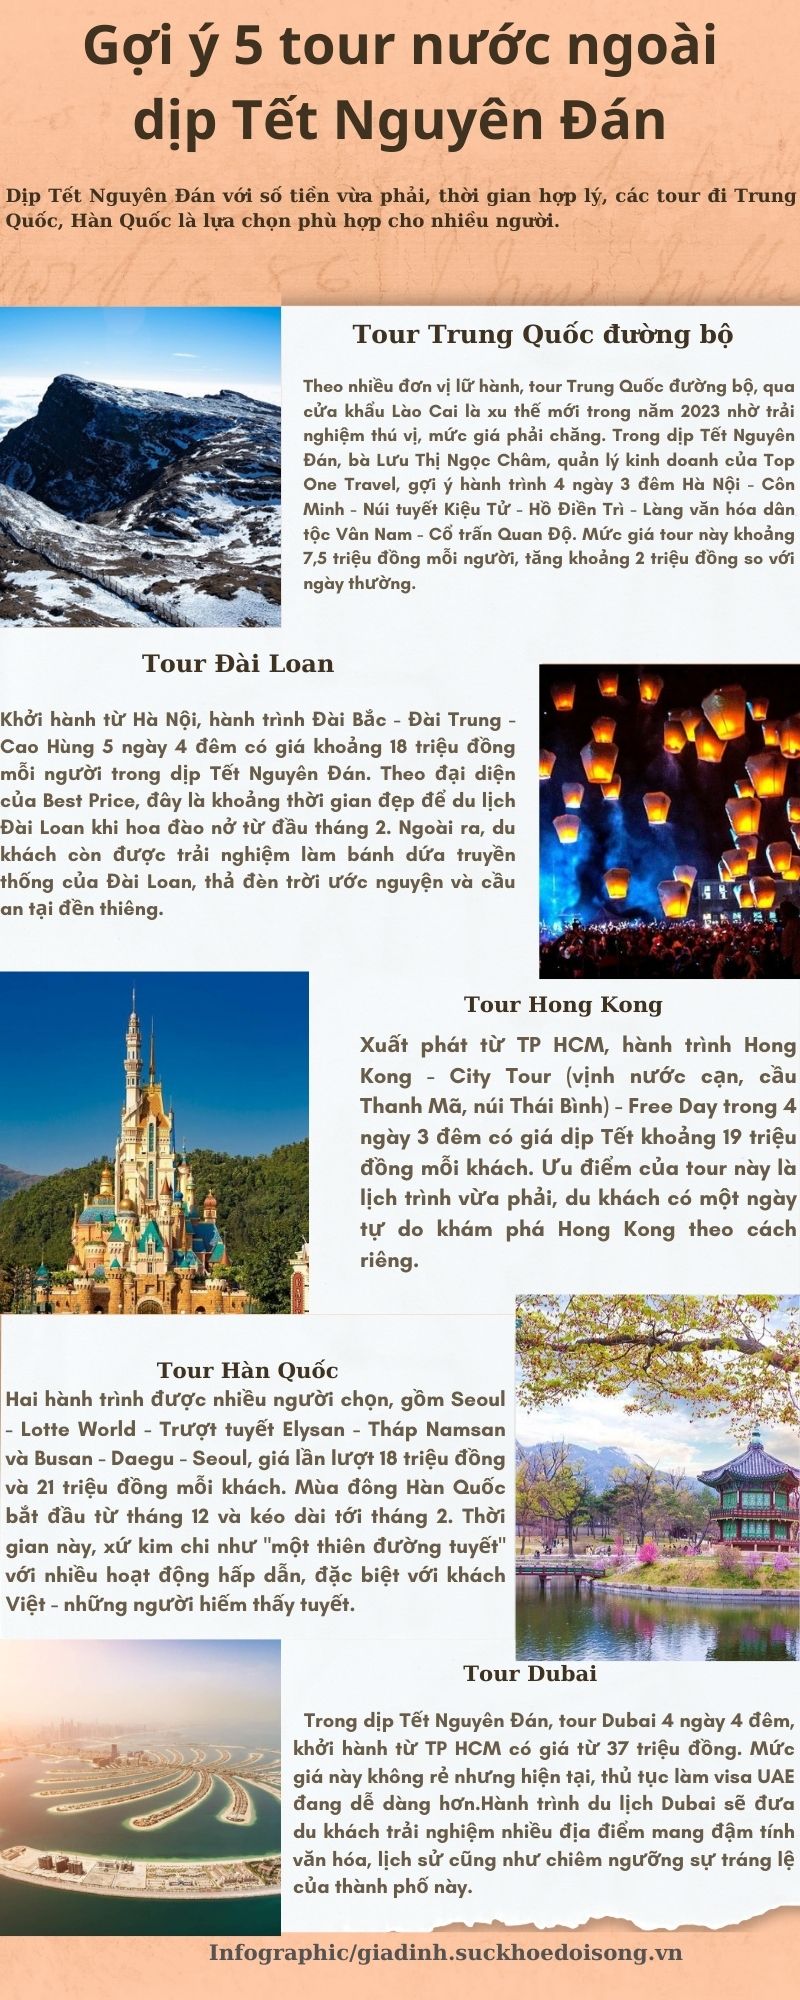 Gợi ý 5 tour du lịch nước ngoài tuyệt đẹp dịp Tết Nguyên Đán - Ảnh 1.